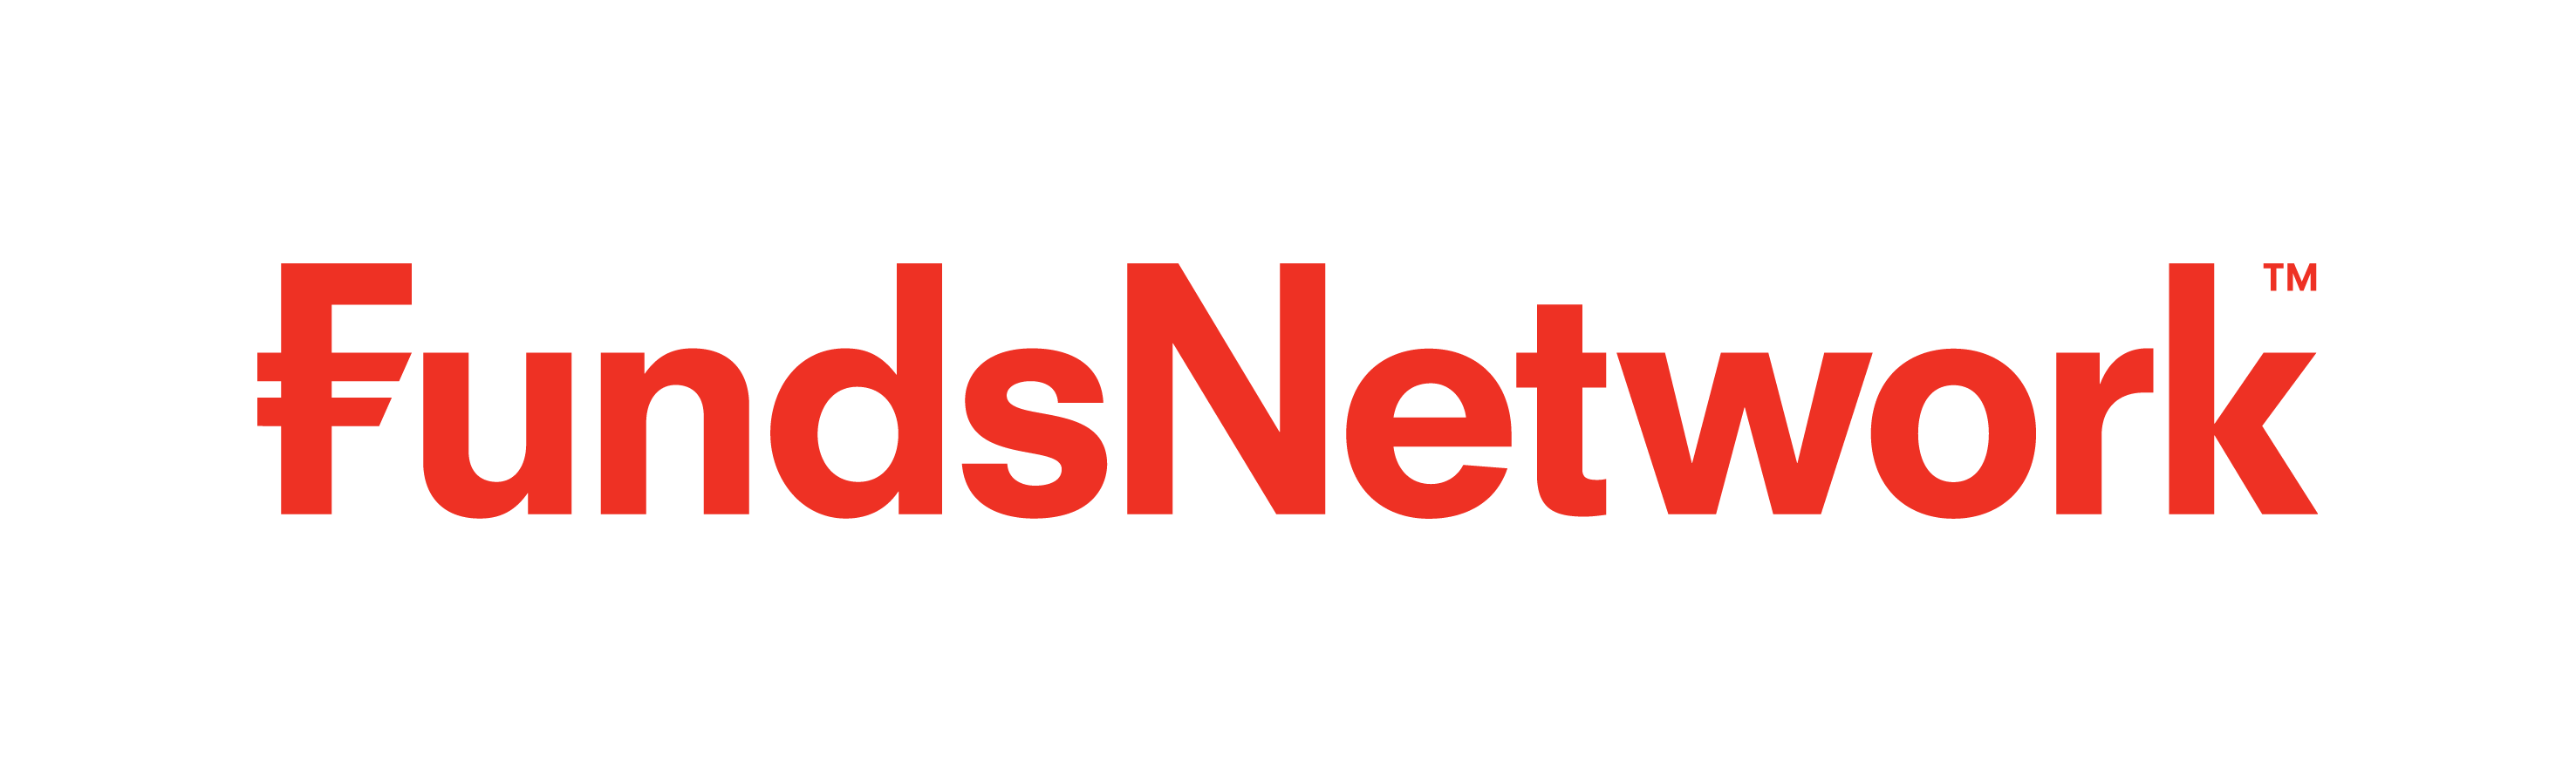 Fund Network logo